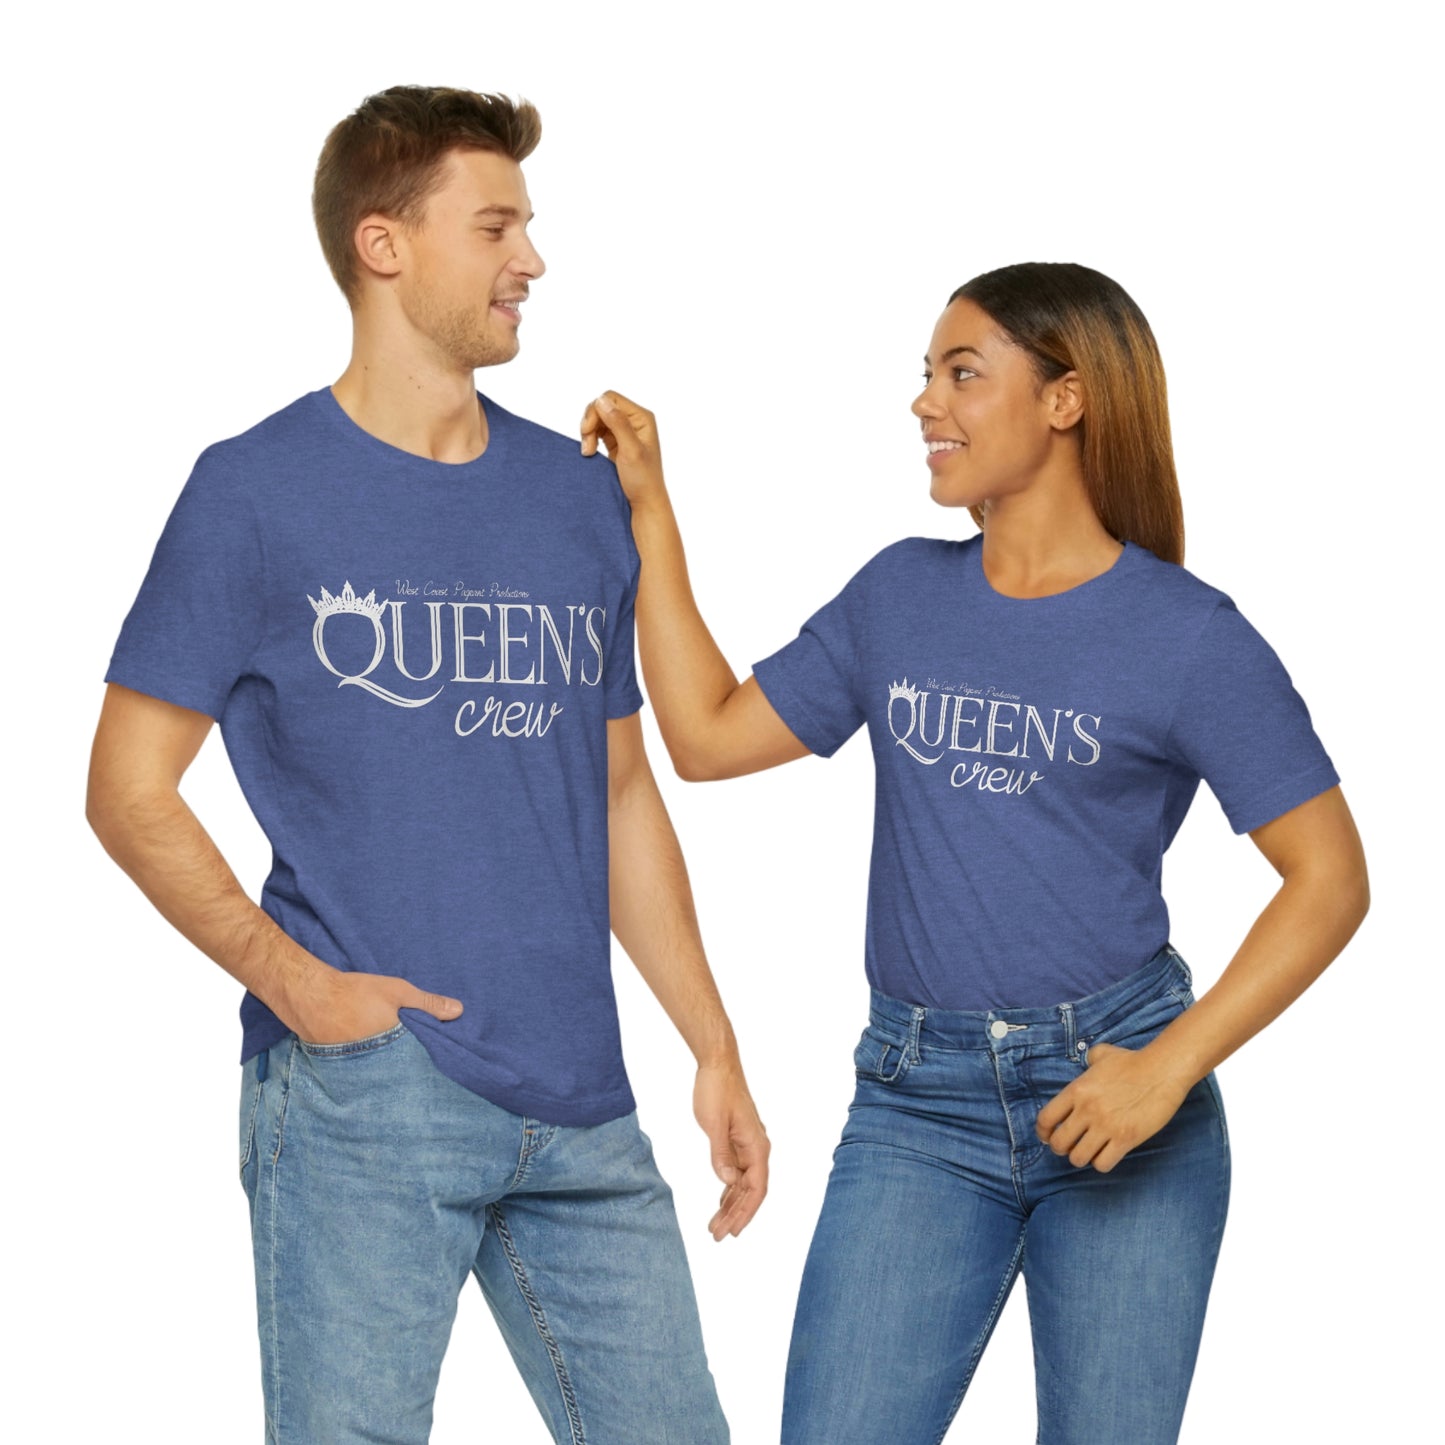 Queen's Crew - Unisex Tee